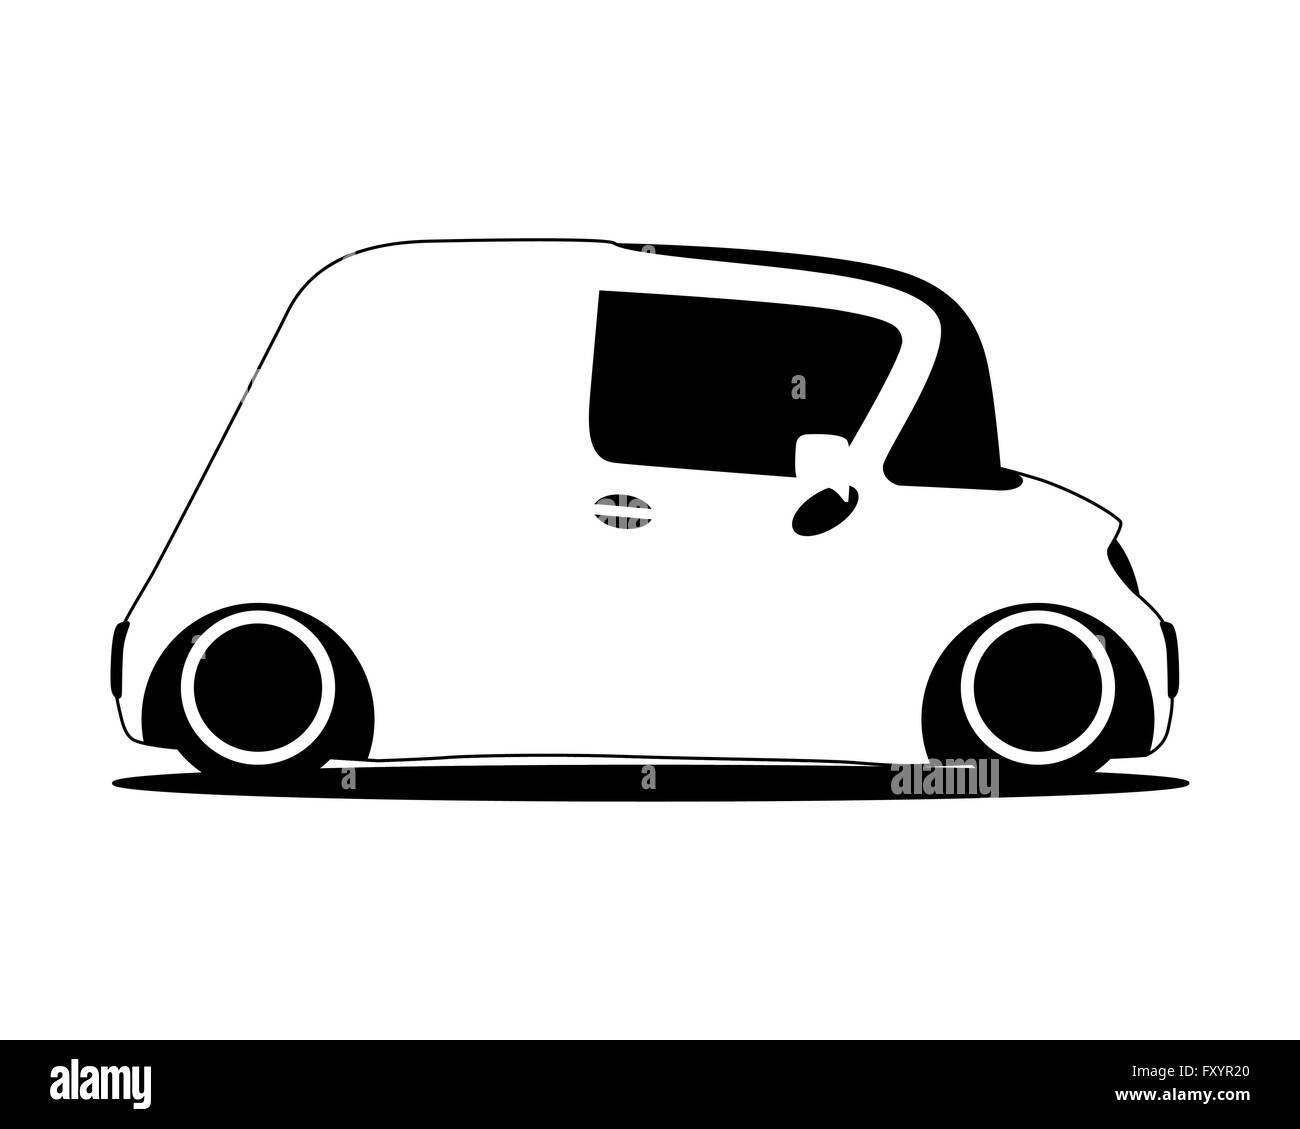 contour silhouette mini future car, vector illustration Stock Vector